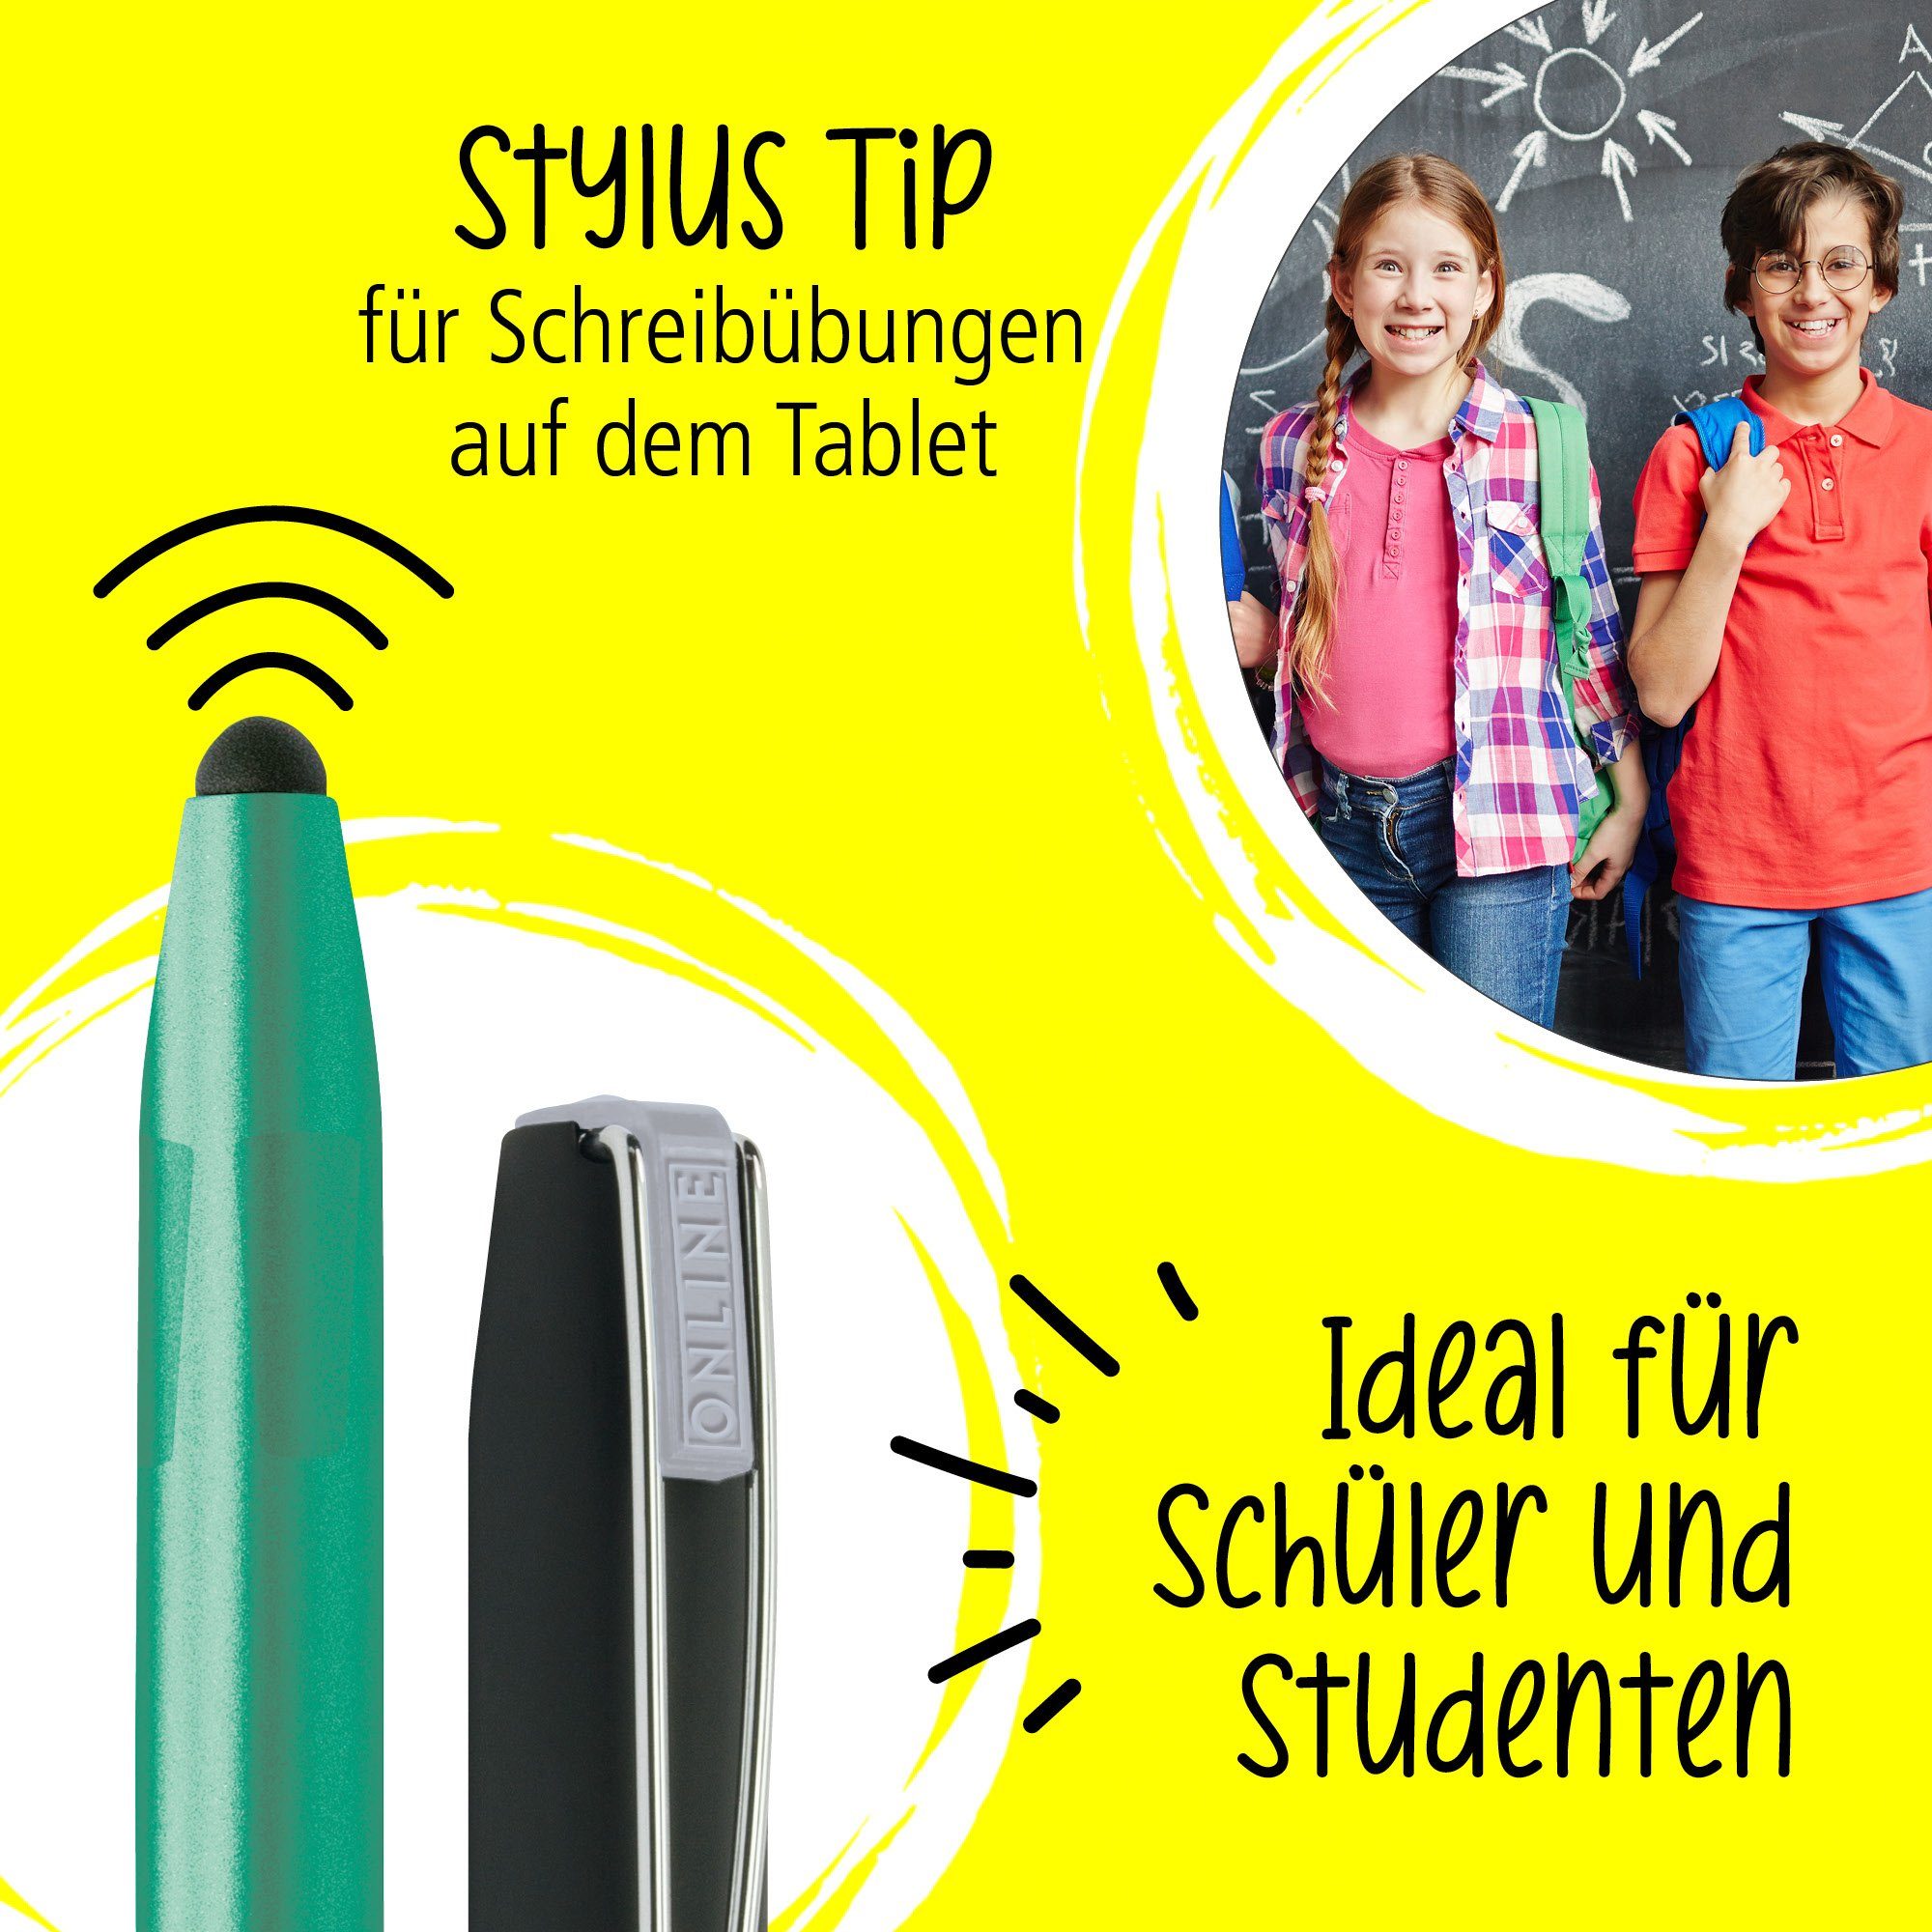 Online Grün die Schule, Füller Switch ergonomisch, Pen Plus, ideal Stylus-Tip für mit